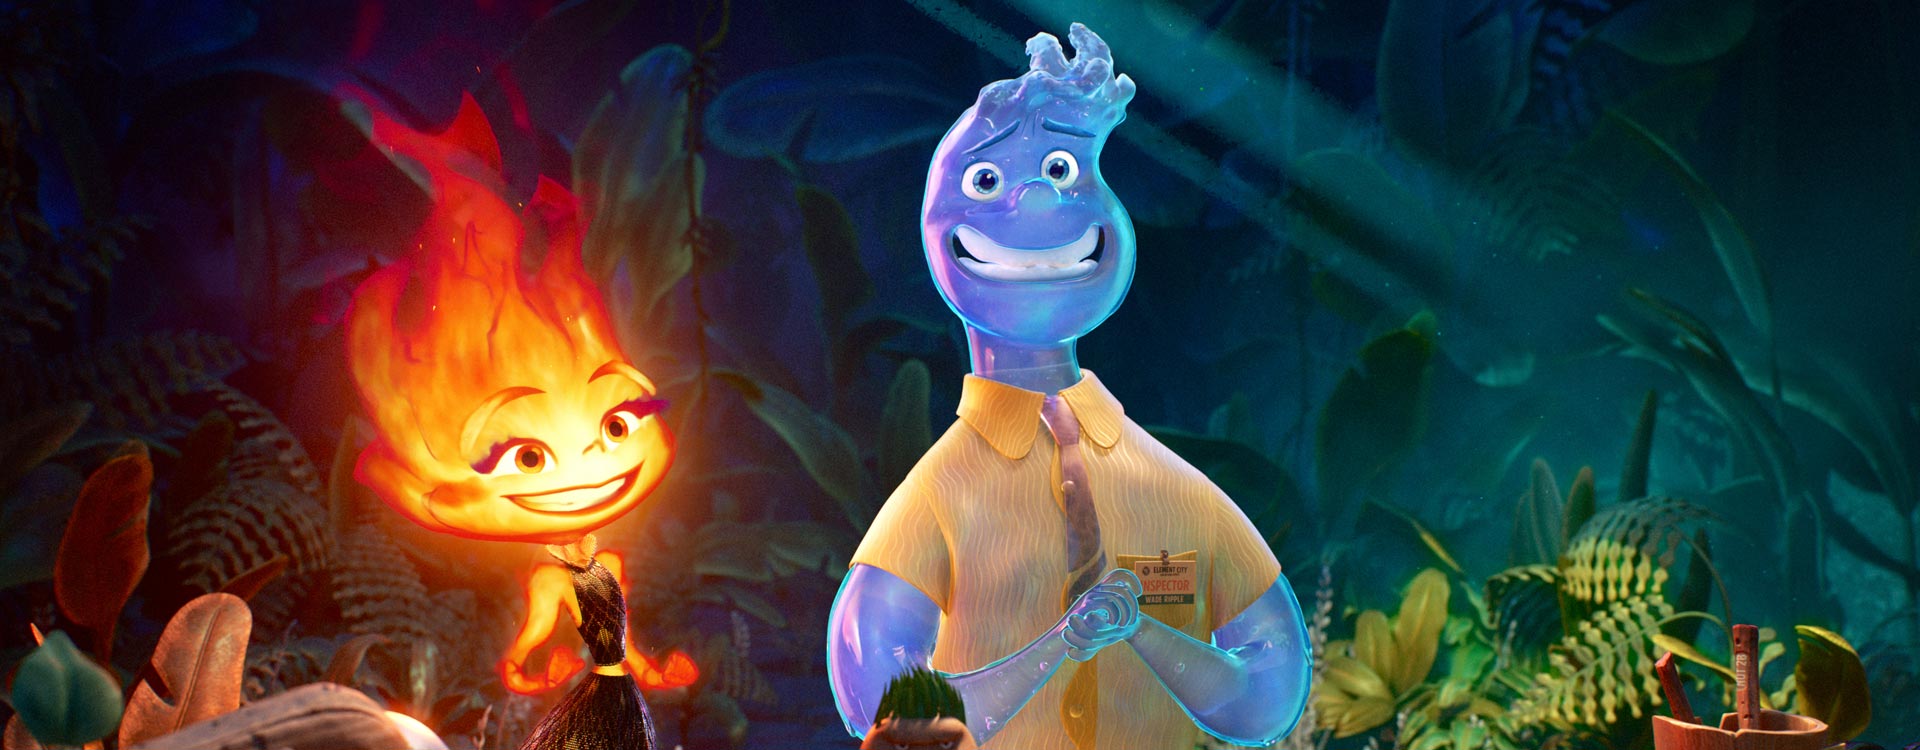 Crítica de ‘Elementos’: una bella pero derivativa animación de Pixar